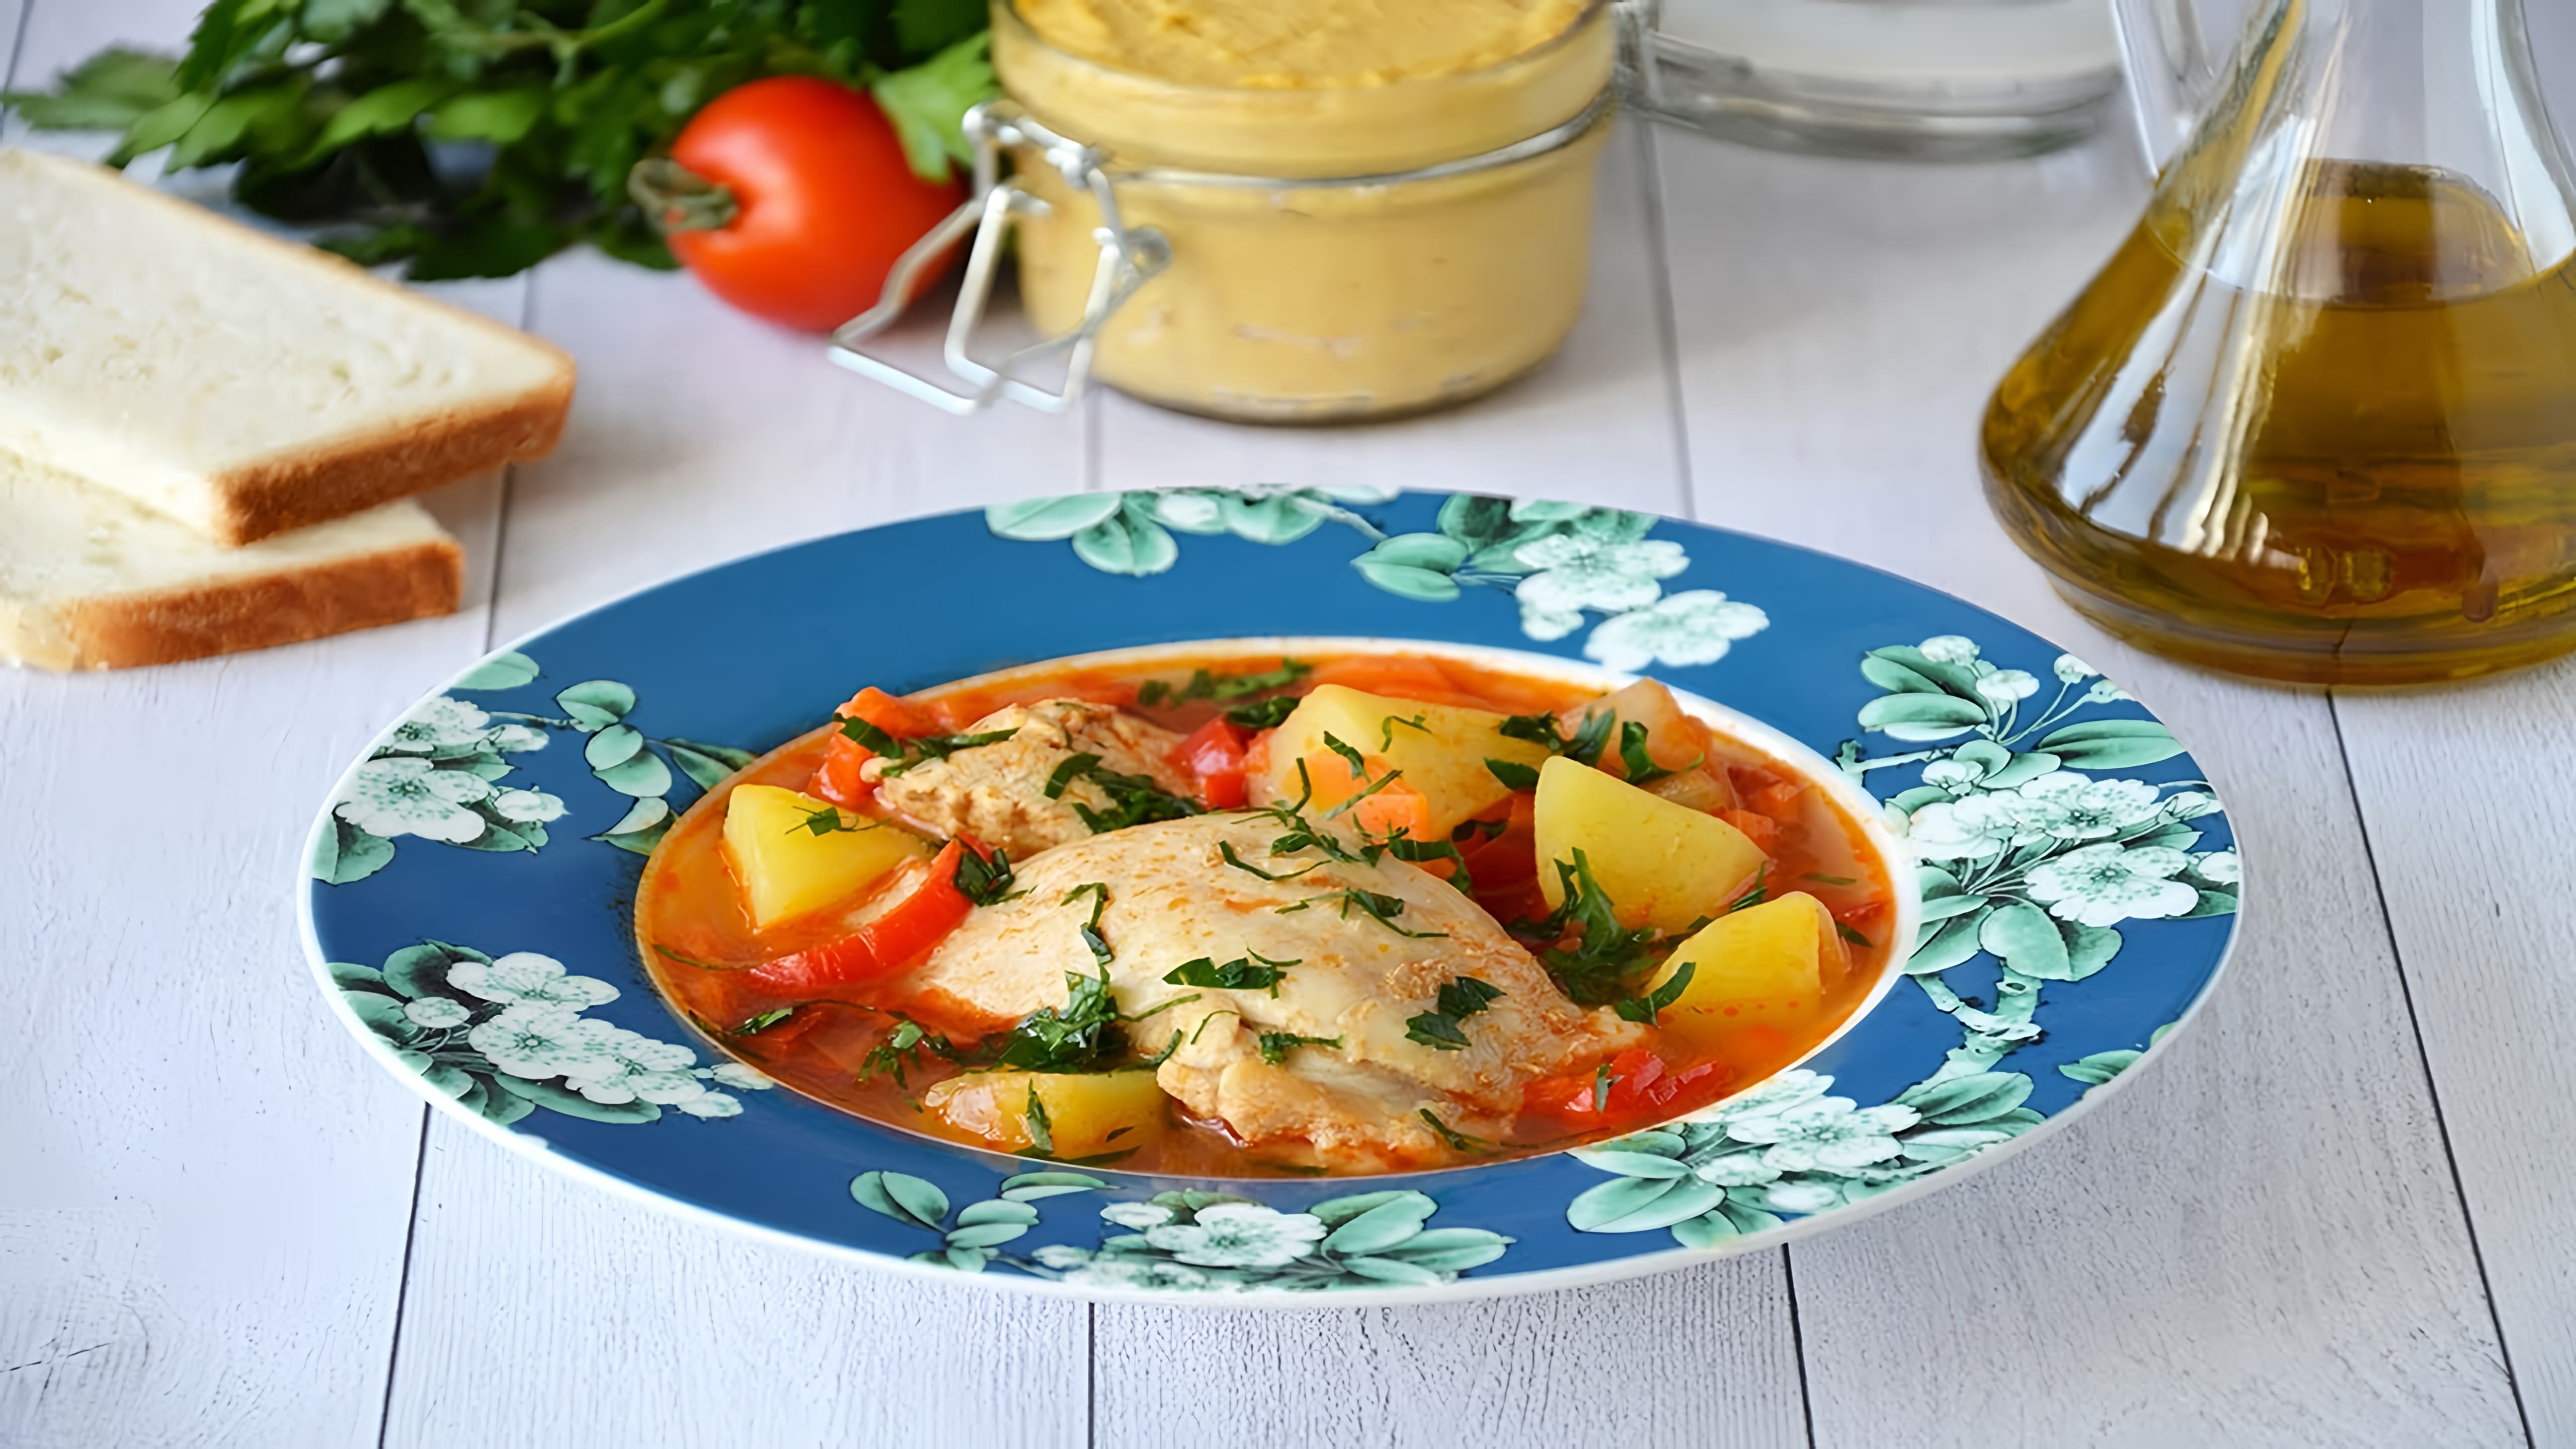 Суп Шурпа из курицы - это вкусное и сытное блюдо, которое можно приготовить в домашних условиях